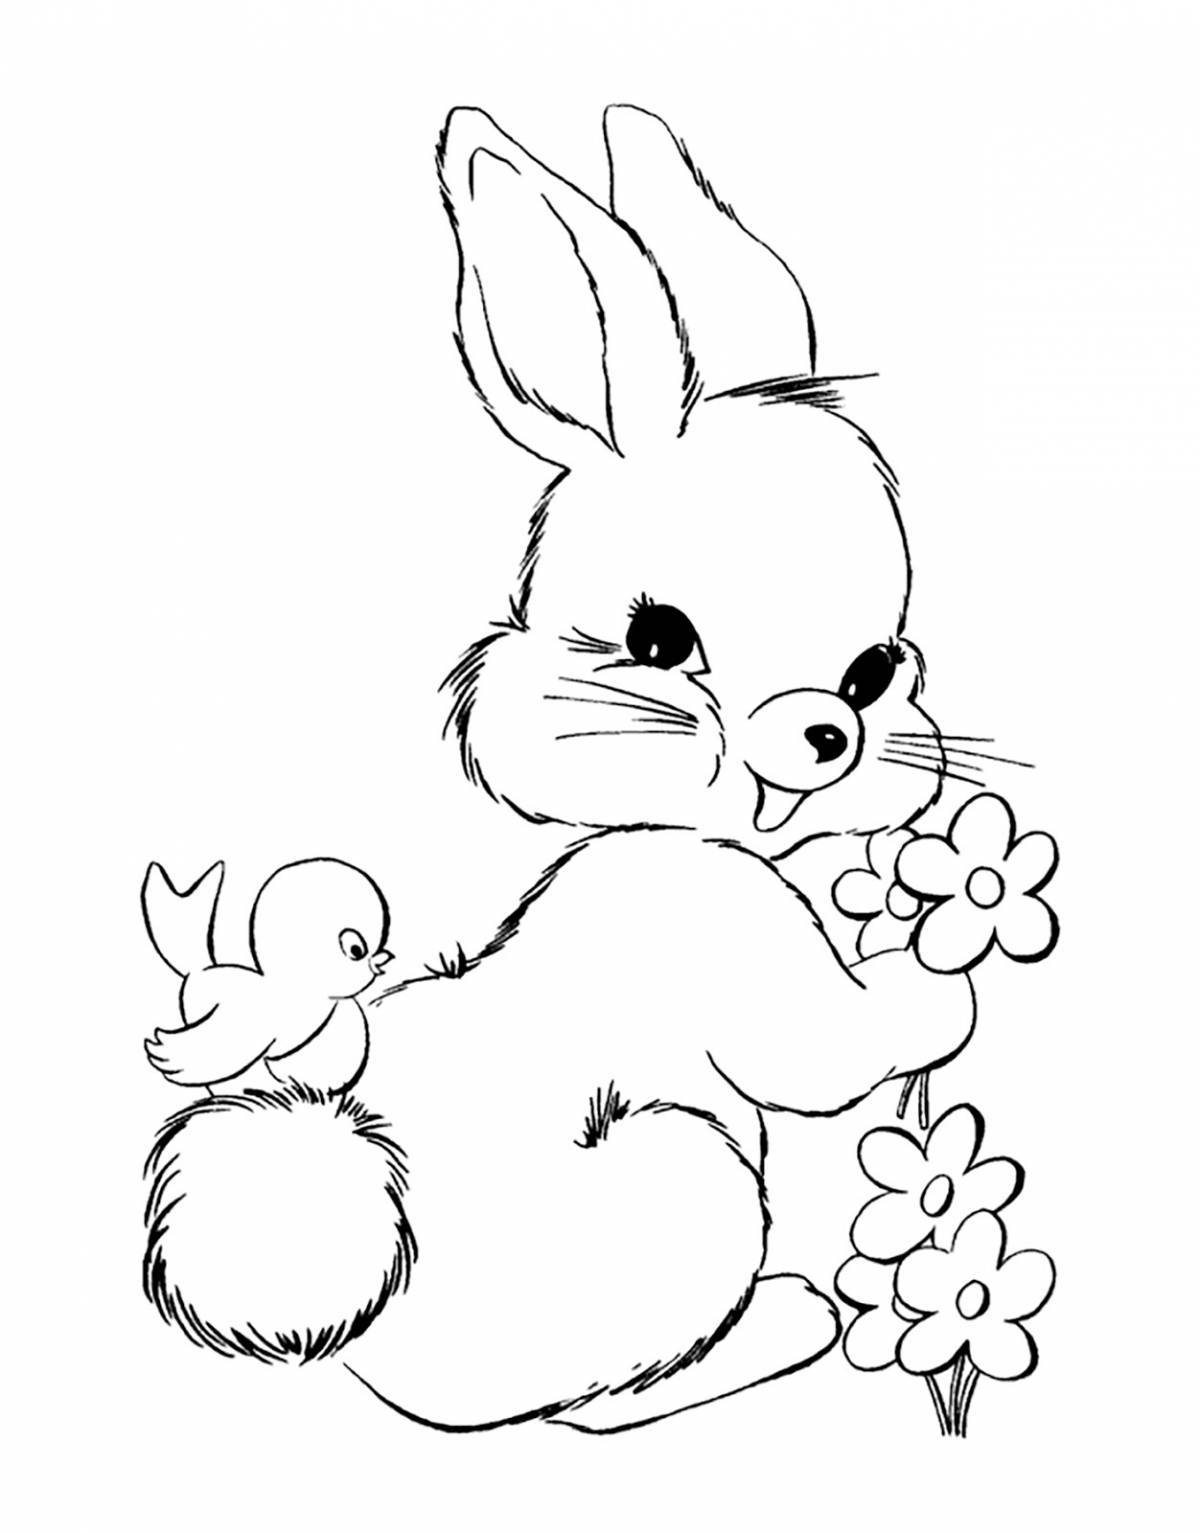 Милая раскраска кролик для детей